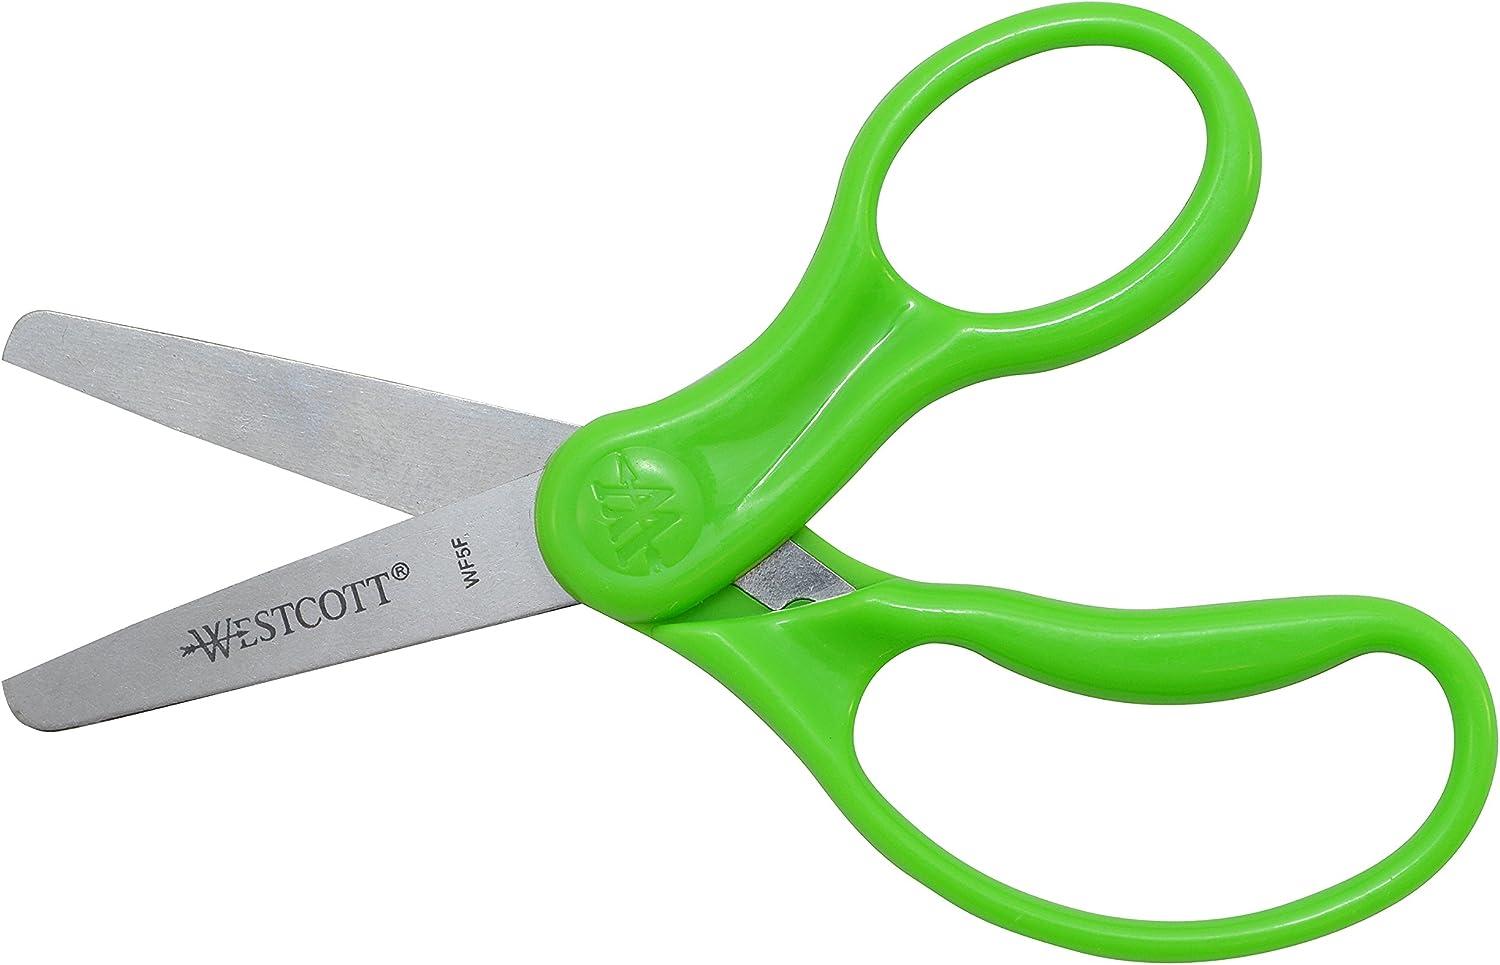 Westcott - Westcott 5 Hard Handle Kids Scissors 2pk, Blunt (13168)